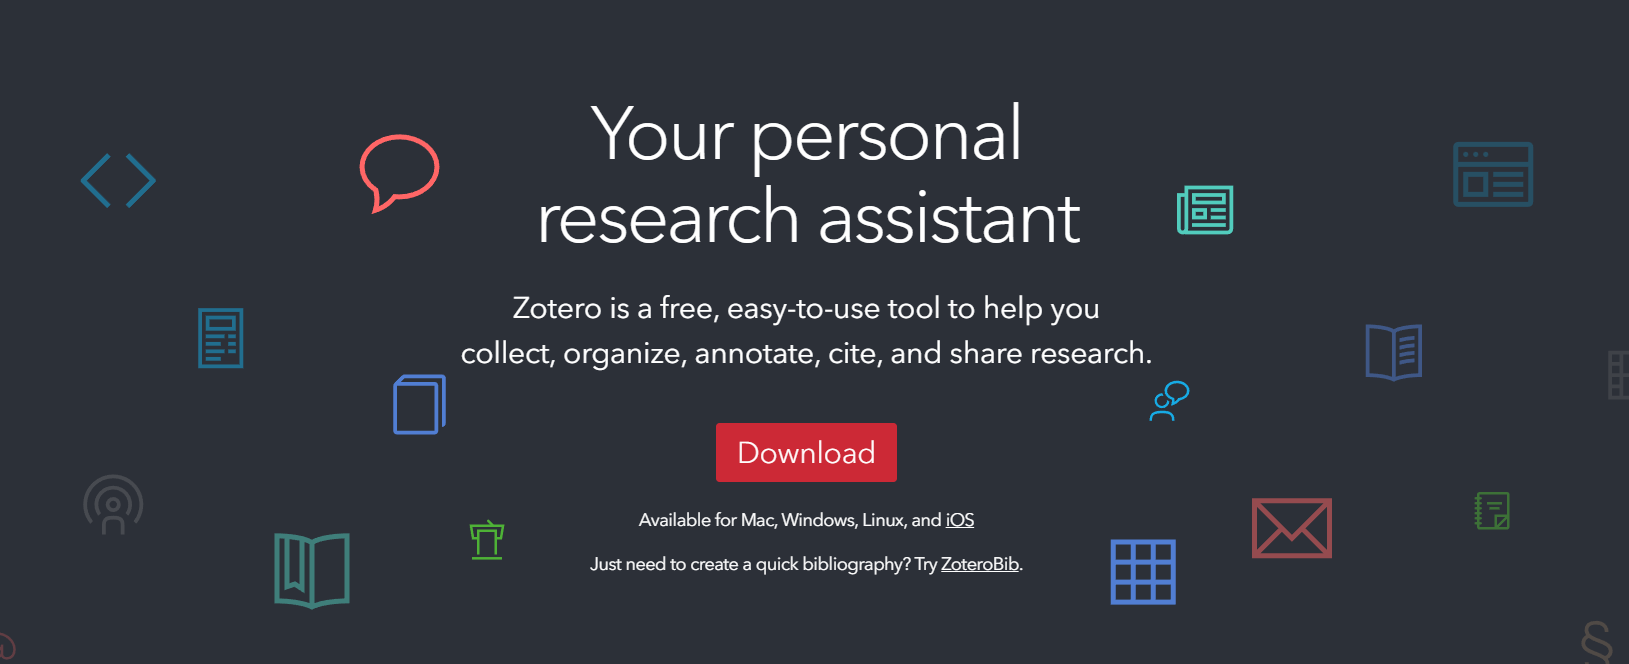  Zotero ist eine kostenlose, benutzerfreundliche Open-Source-Software, die es ermöglicht, Forschungsmaterialien zu sammeln, zu organisieren und zu teilen. Mit Zotero können Benutzer Webseiten, PDFs, Bilder, Audio- und Videodateien sowie andere Arten von Dateien speichern und mit Notizen und Tags versehen. Es ist auch möglich, Zitate und Bibliografien zu erstellen und diese in verschiedenen Z 